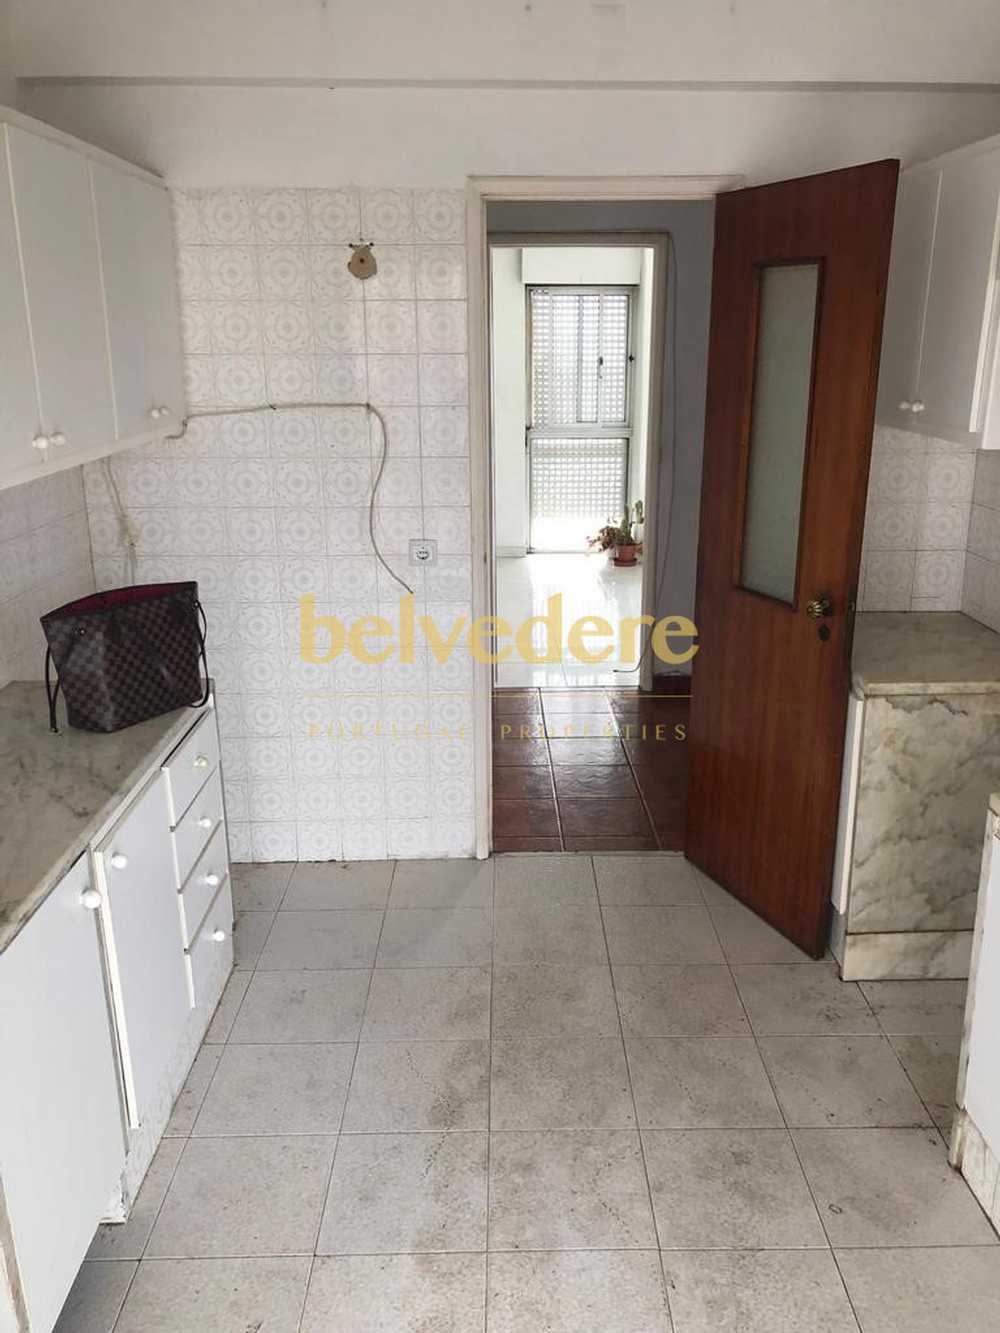  for sale apartment  Pontinha  Odivelas 6